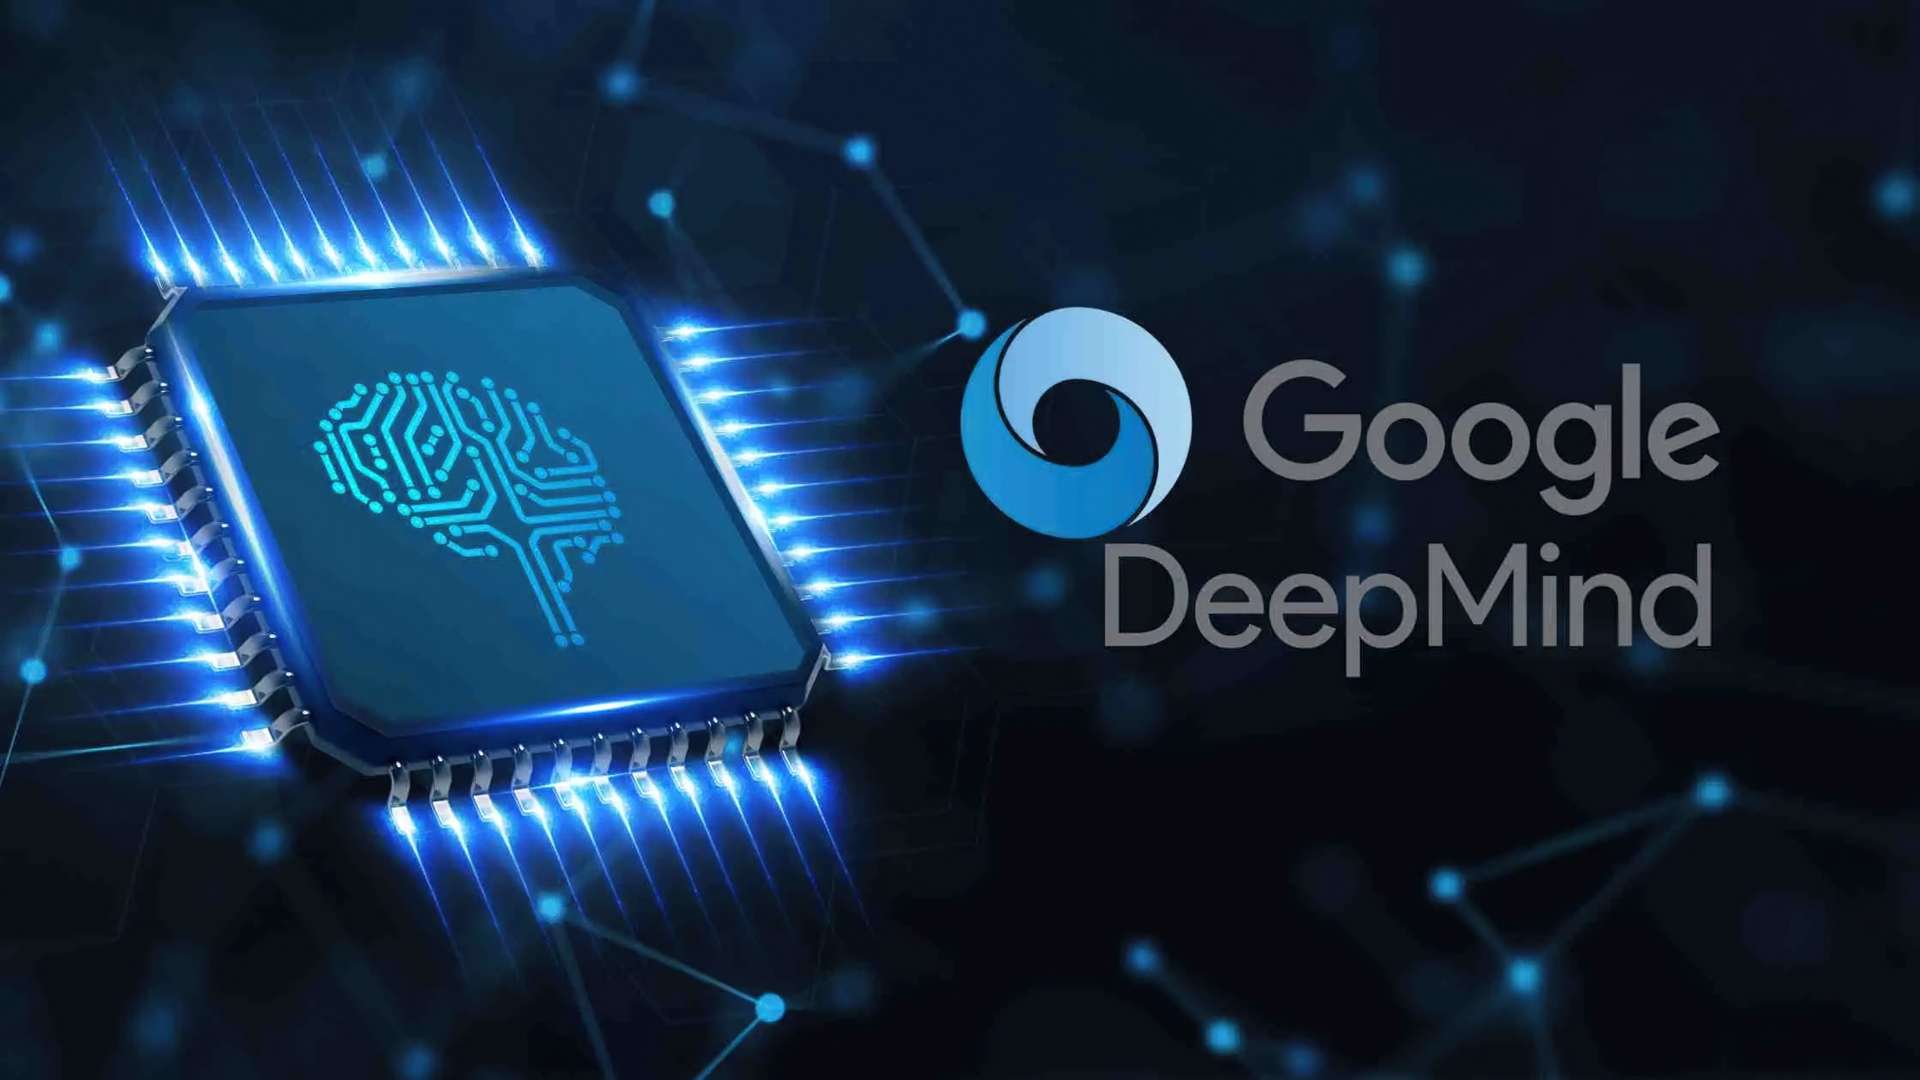 DeepMind de Google dit qu’il est sur le point d’atteindre une intelligence de niveau humain